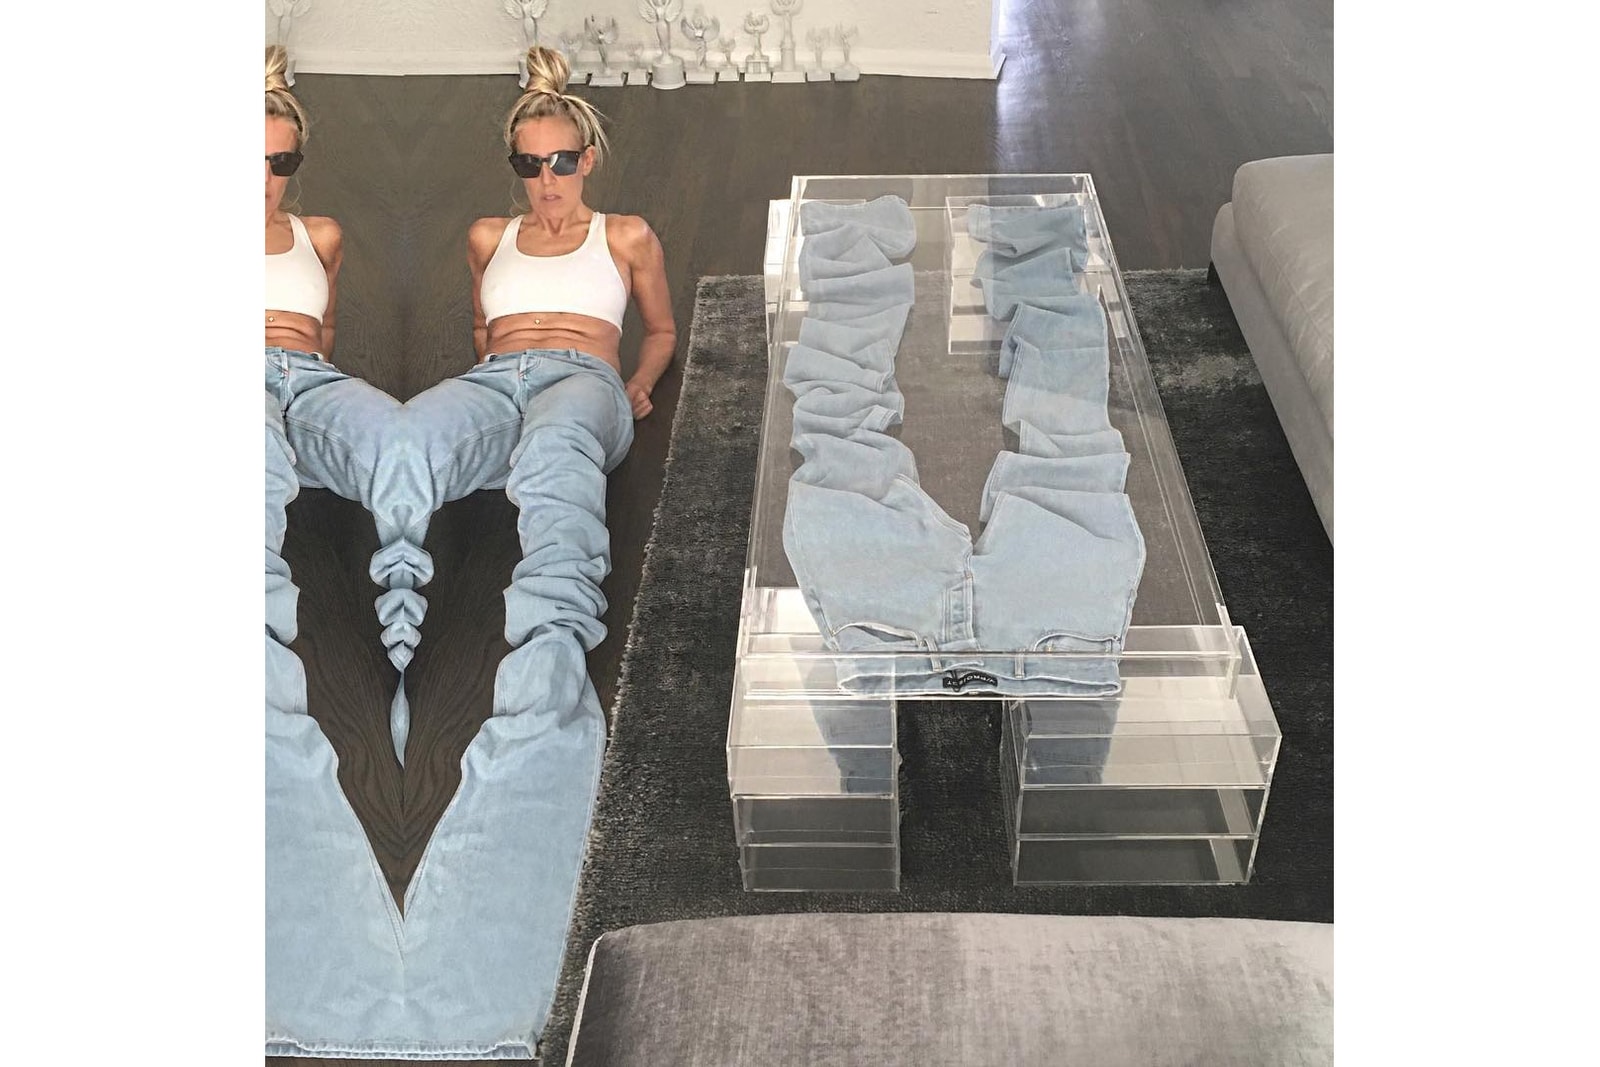 Marni Senofonte Beyonce Kendall Jenner Stylist Furniture Design Styling Fashion